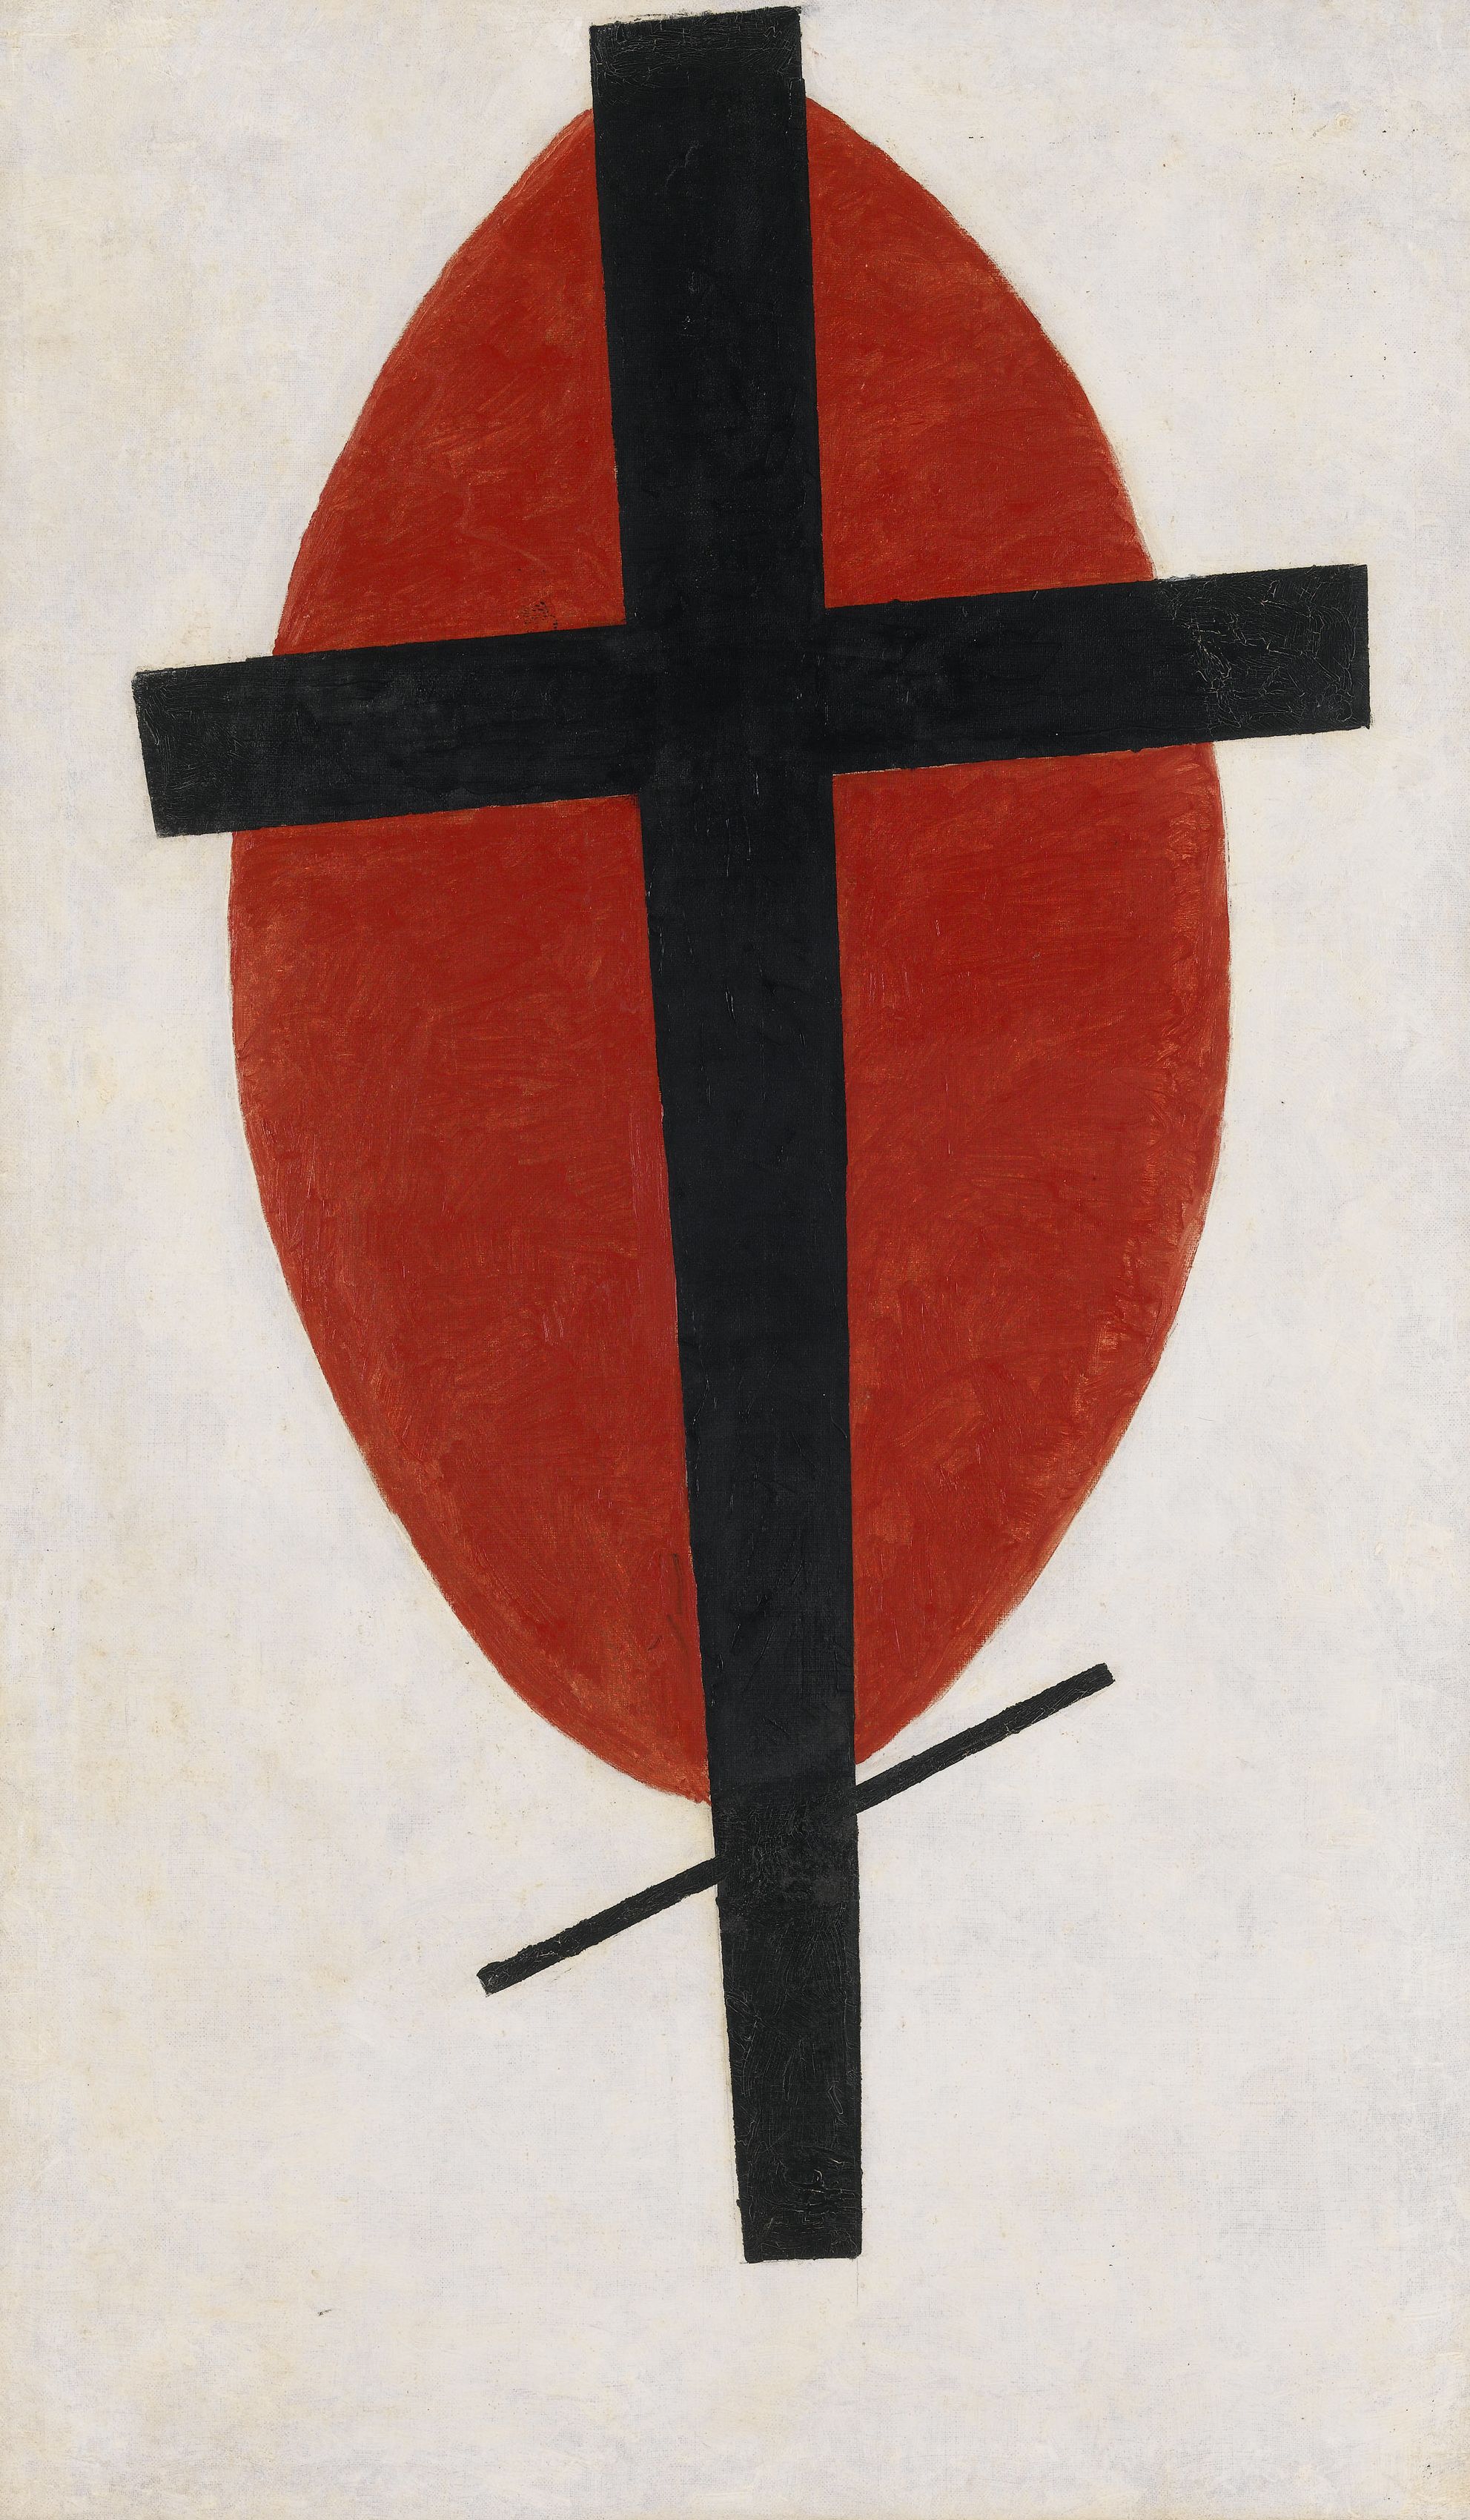 التفوق الغامض ( صليب أسود على بيضة حمراء) by Kazimir Malevich - 1920-22 - 100.2 by 59.2 cm 